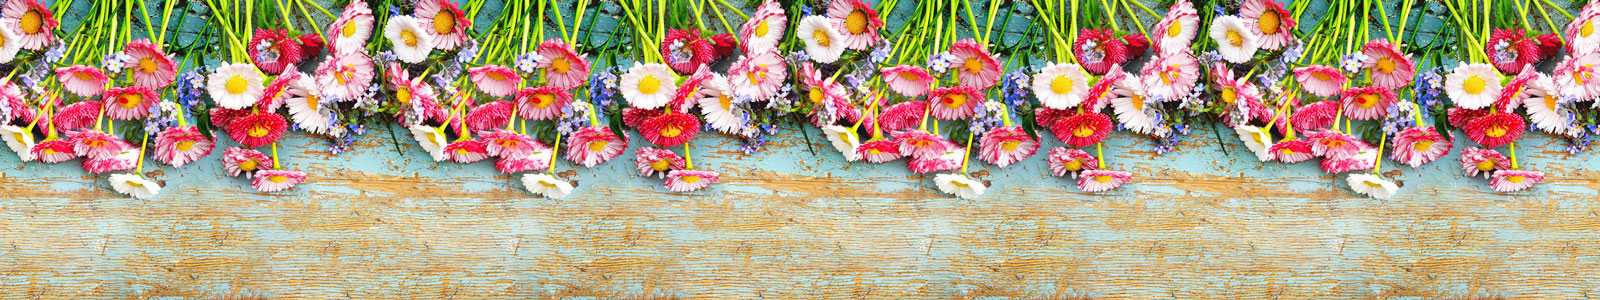 №5958 - Яркие цветочки на старом деревянном столе